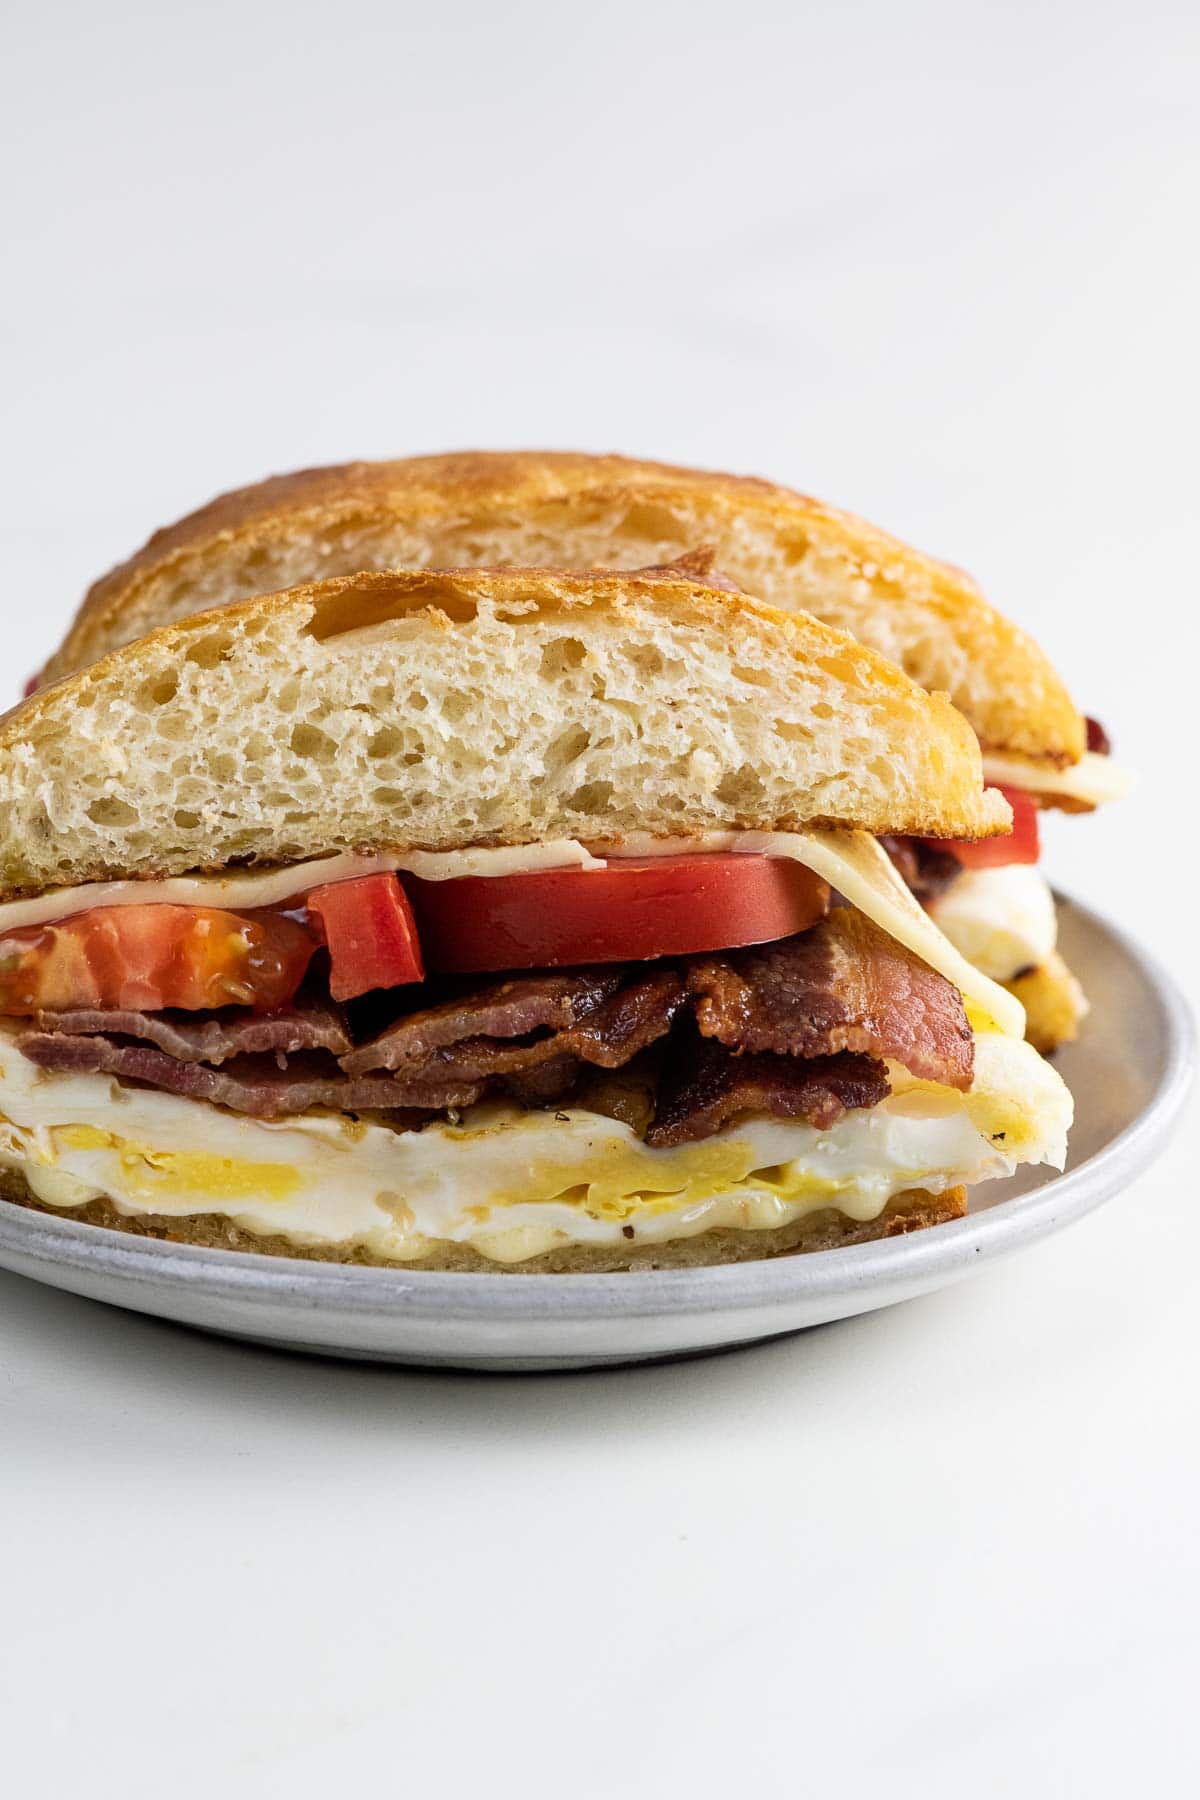 a bacon egg and cheese sandwich with tomato on a potato bun